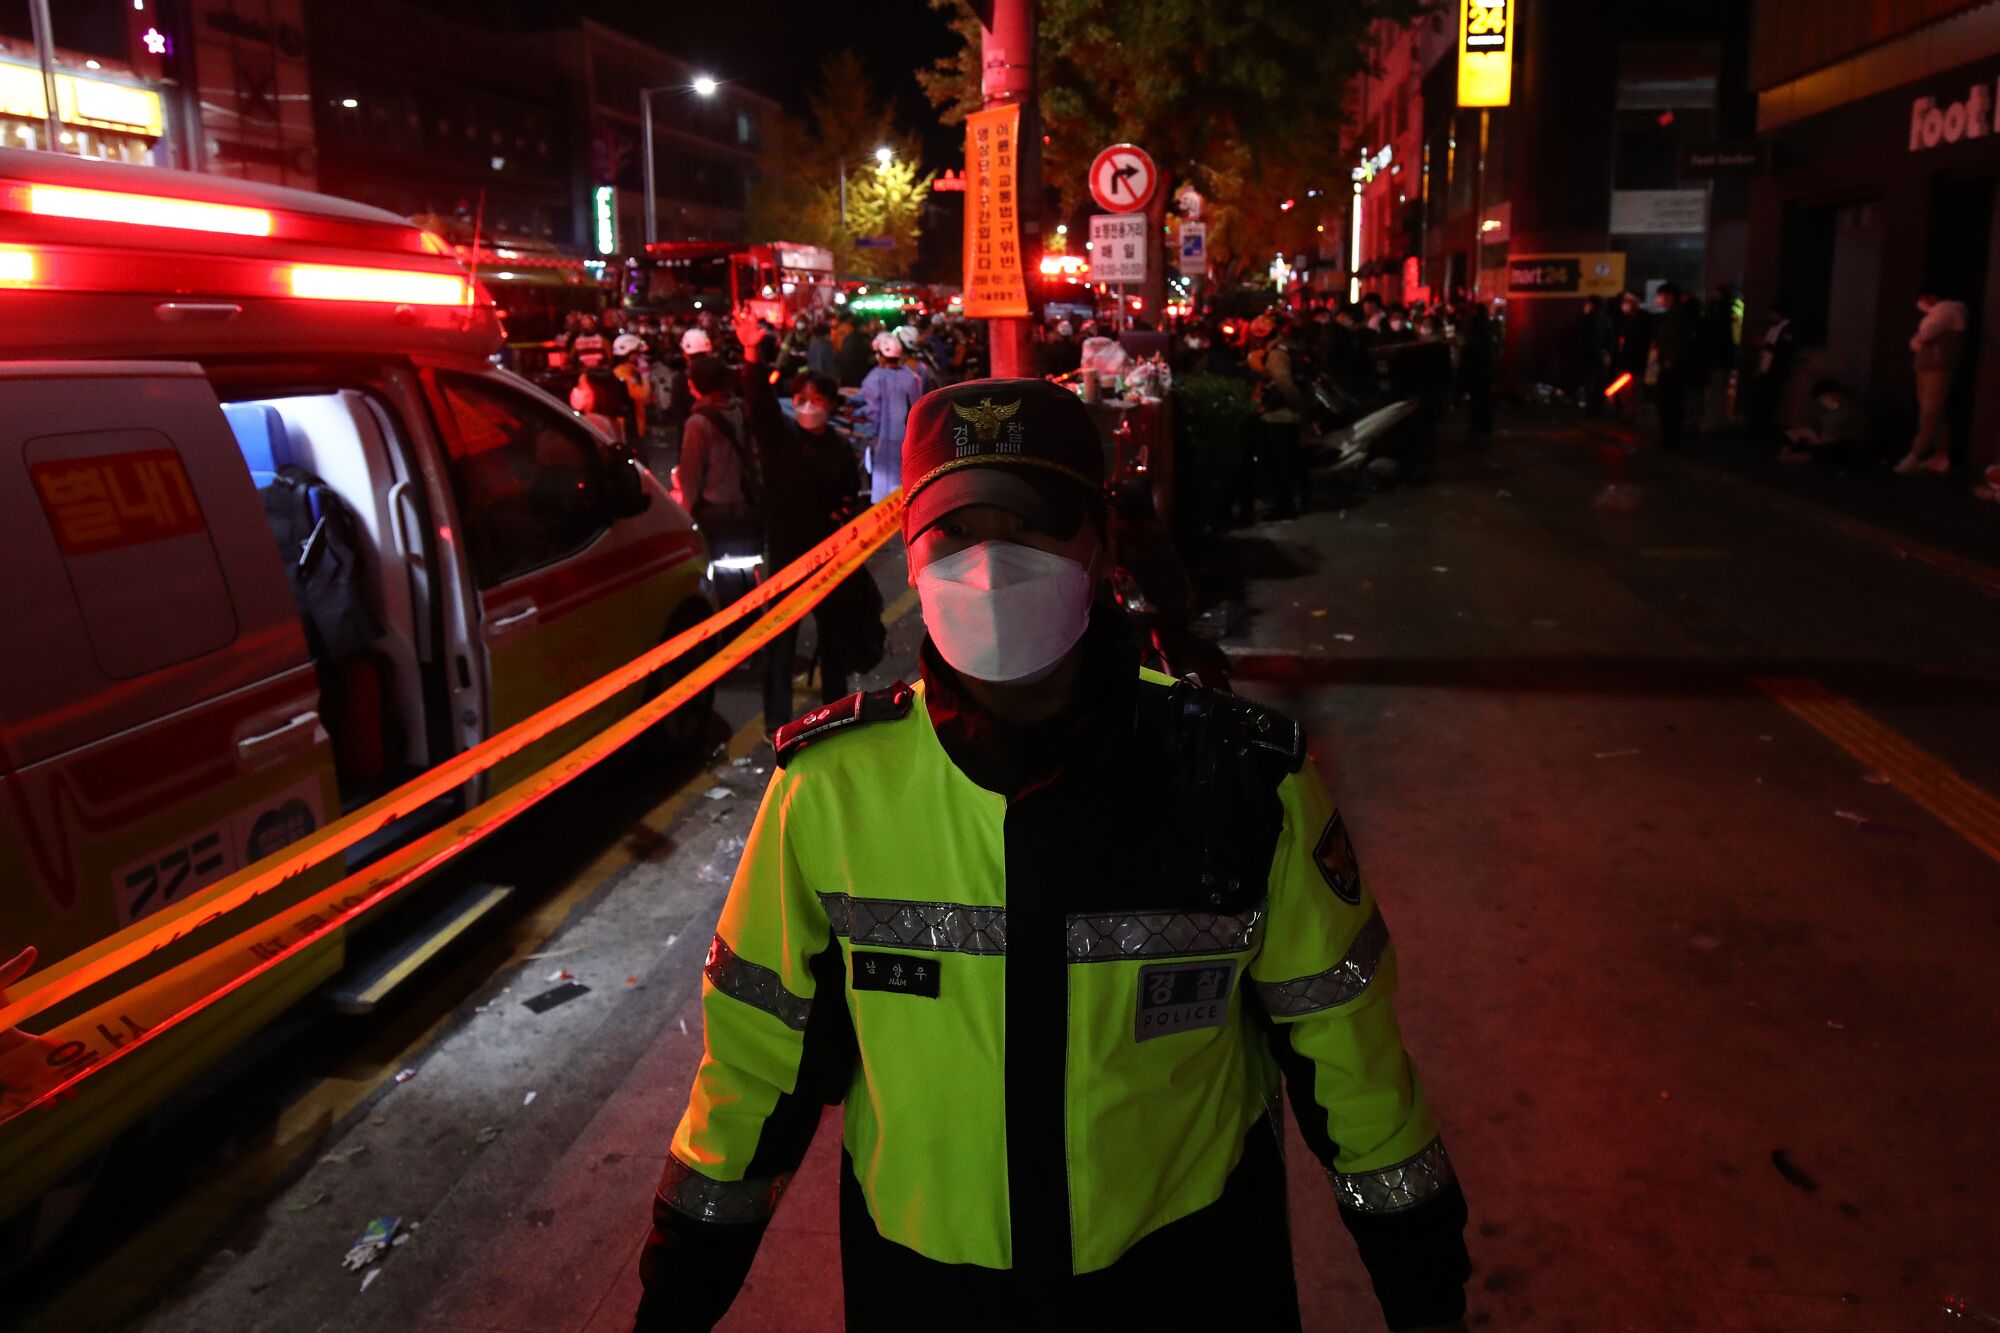 Sarı-yeşil yelek giymiş bir polis memuru, acil durum araçlarıyla dolu kalabalık bir caddede kırmızı ışıklarla çevrili.